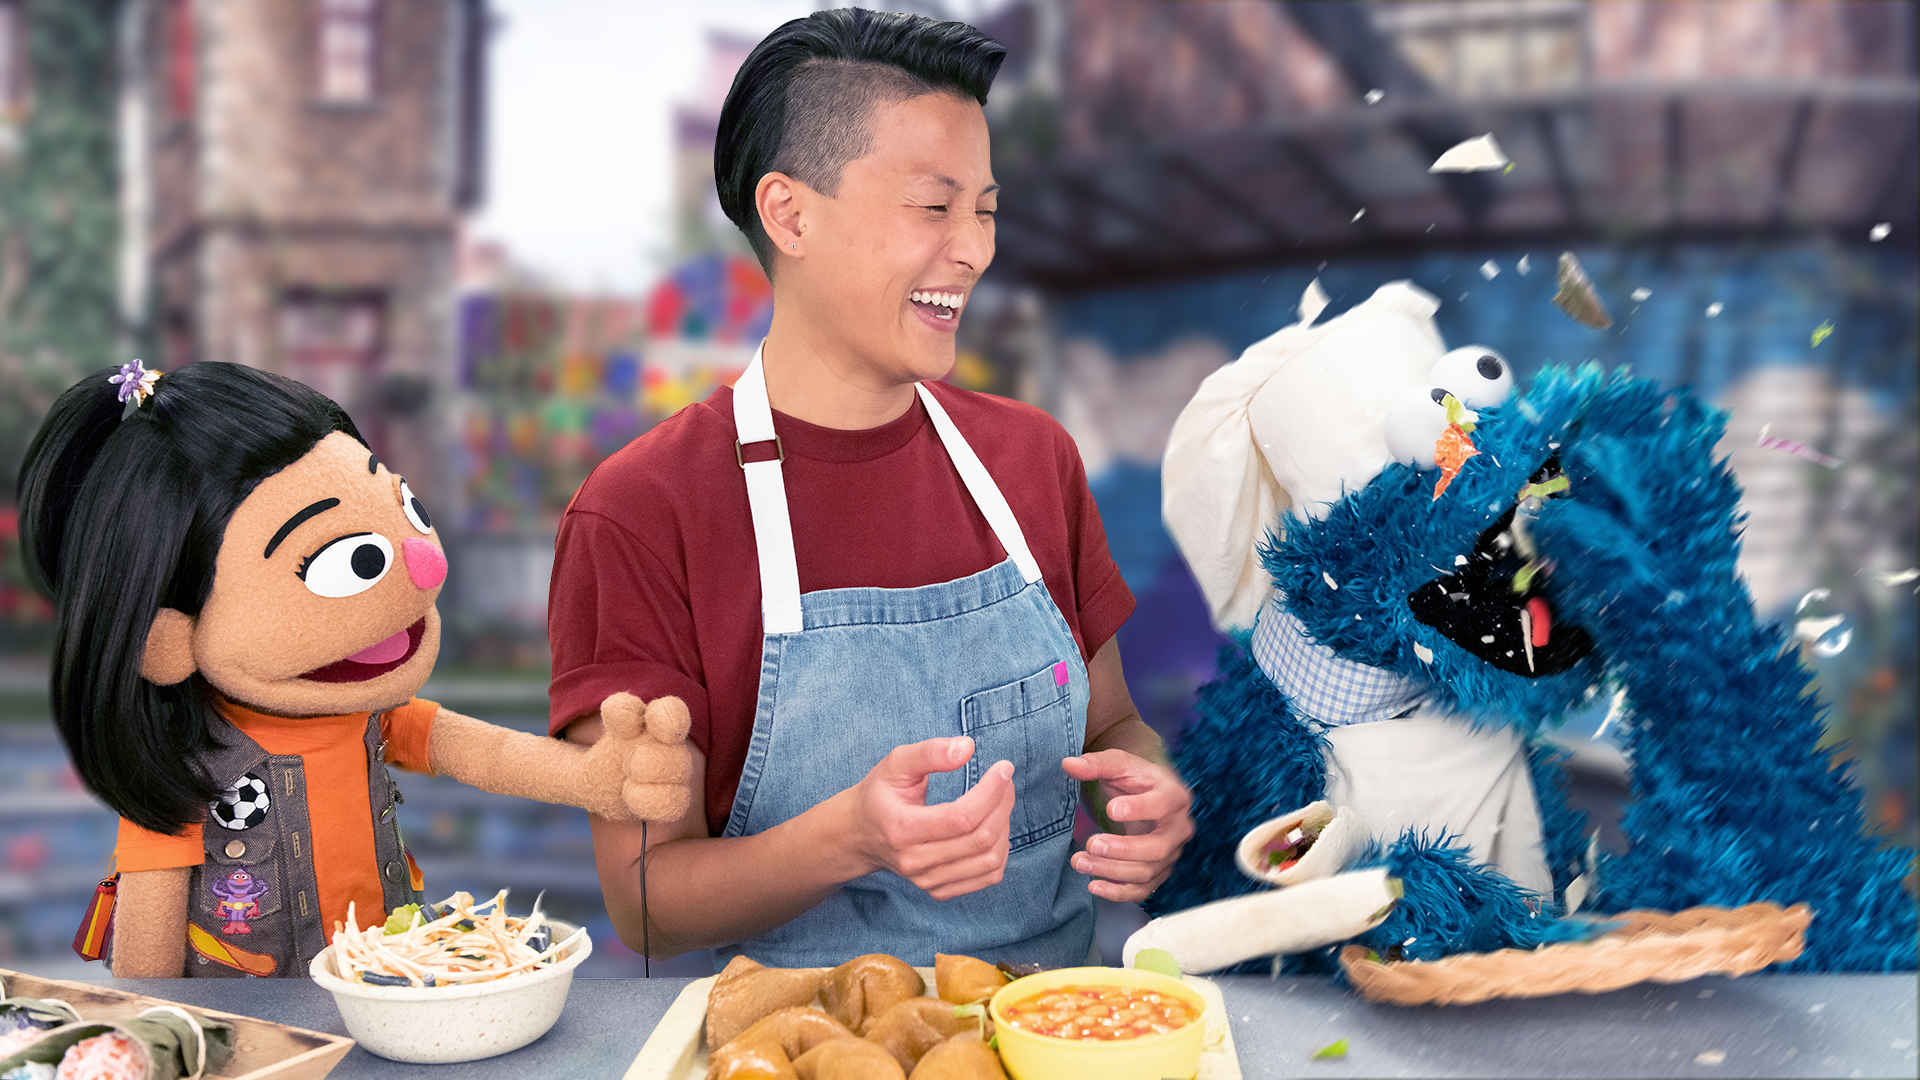 La chef Melissa King, el muppet Ji-Young y el Monstruo de las galletas se paran junto a una mesa de comida mientras el Monstruo de las galletas devora comida.